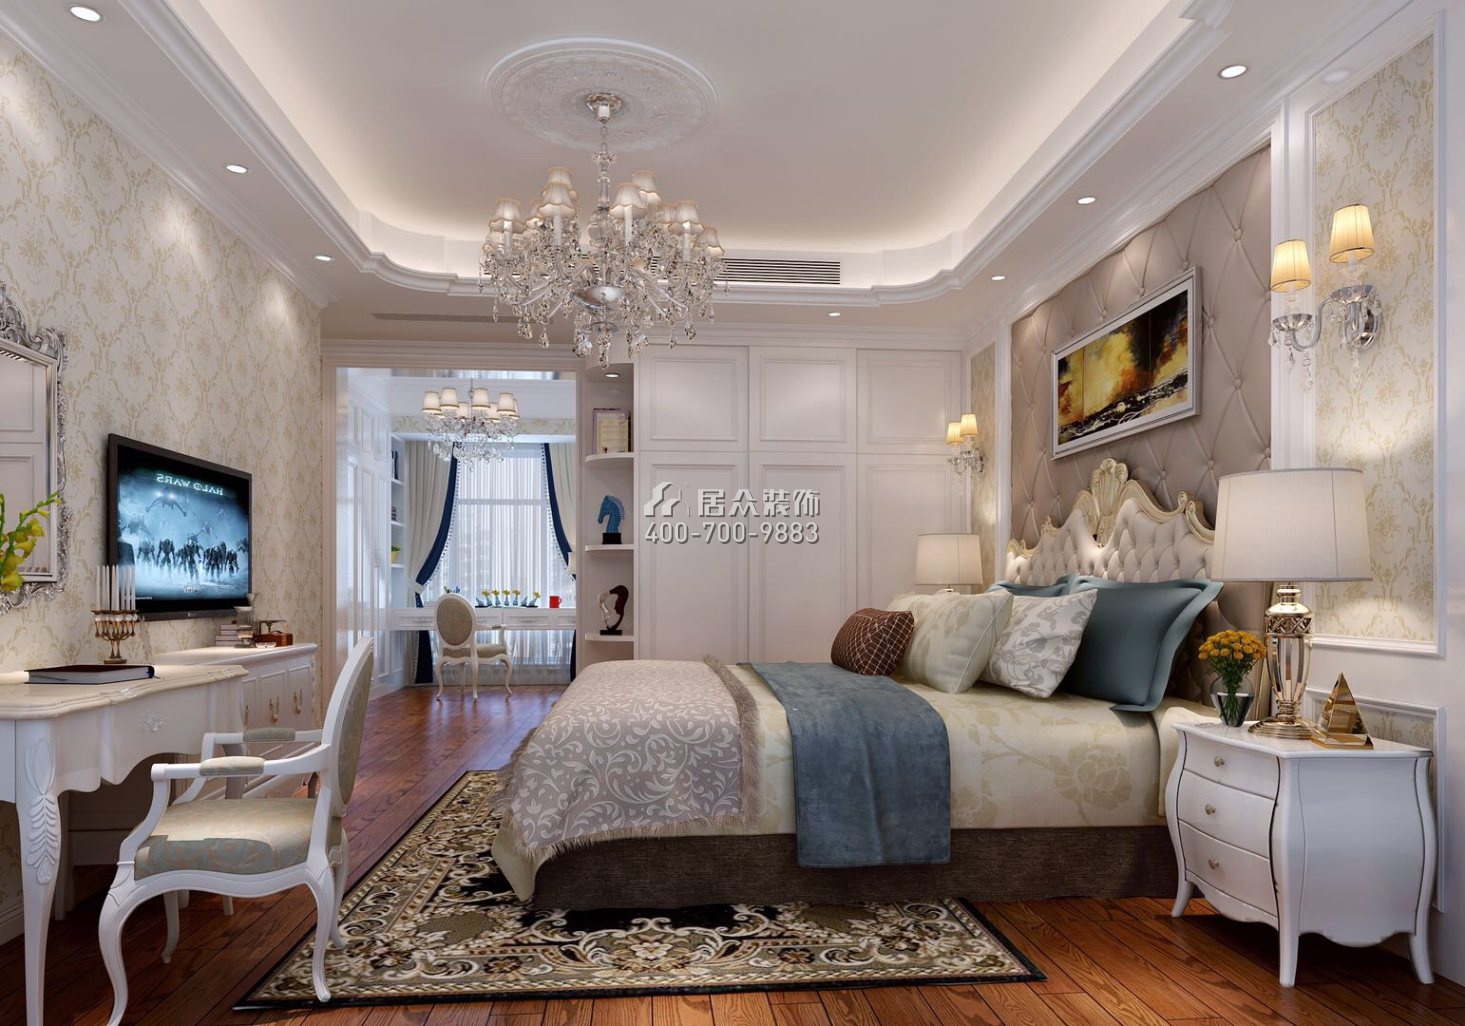 松茂御龙湾雅苑一期160平方米欧式风格平层户型卧室装修效果图